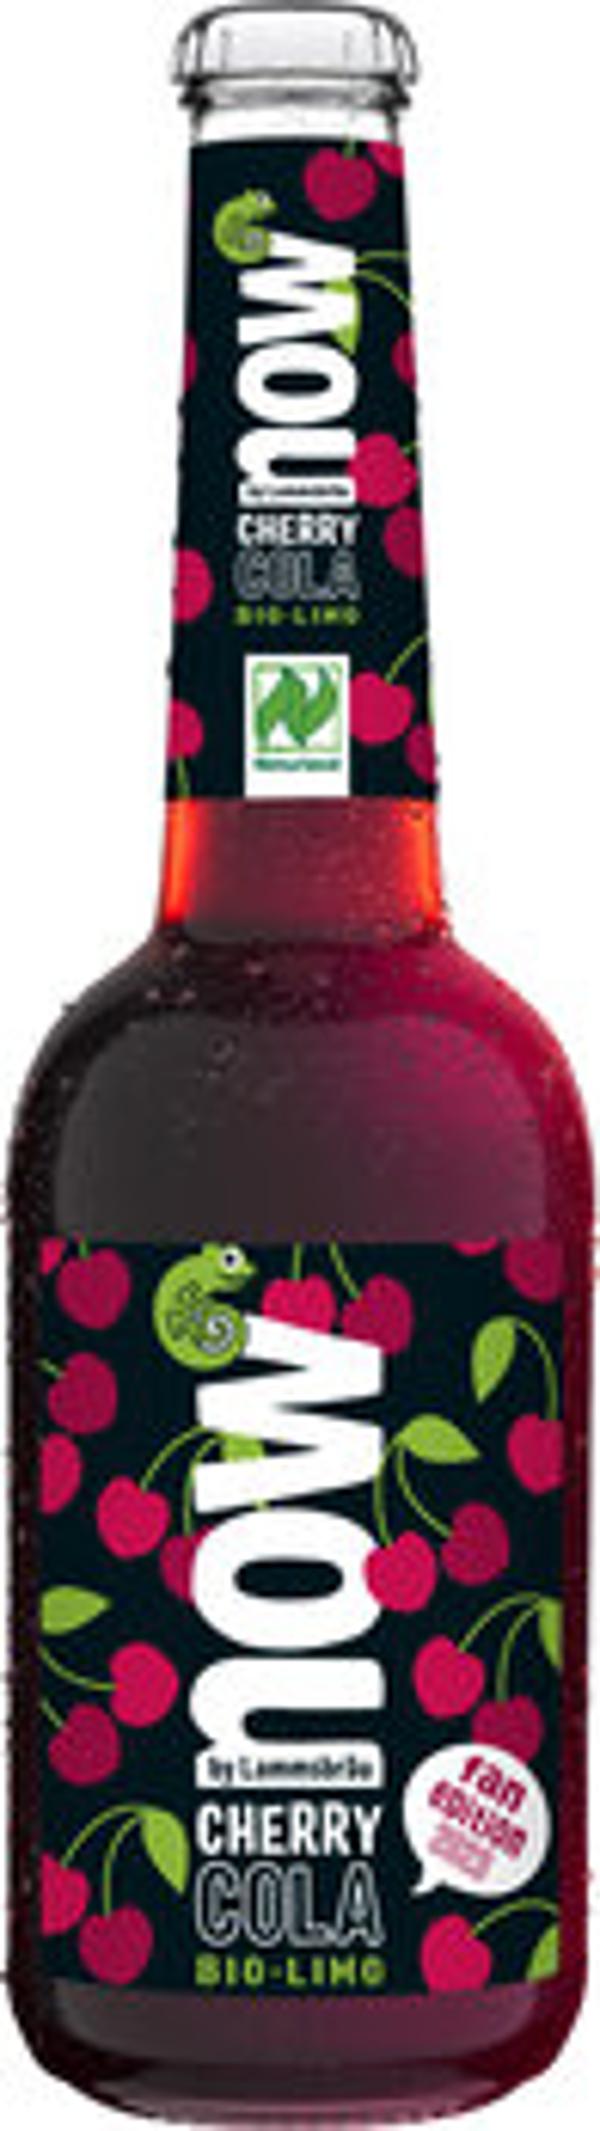 Produktfoto zu now Cherry Cola Kasten 10x0,33l